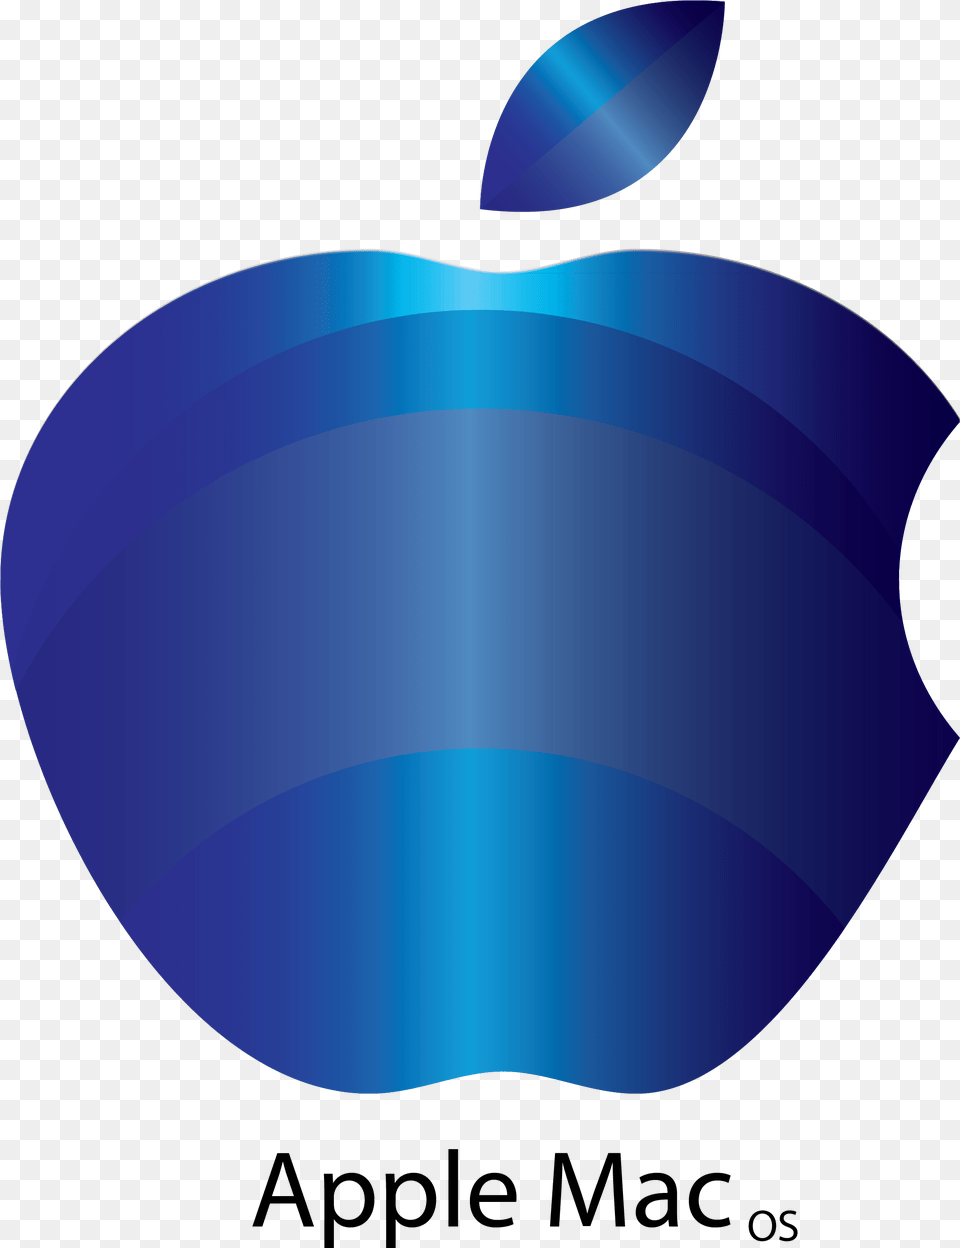 Blue Apple Mac Logo Graphic Design, Flower, Petal, Plant, Disk Png Image